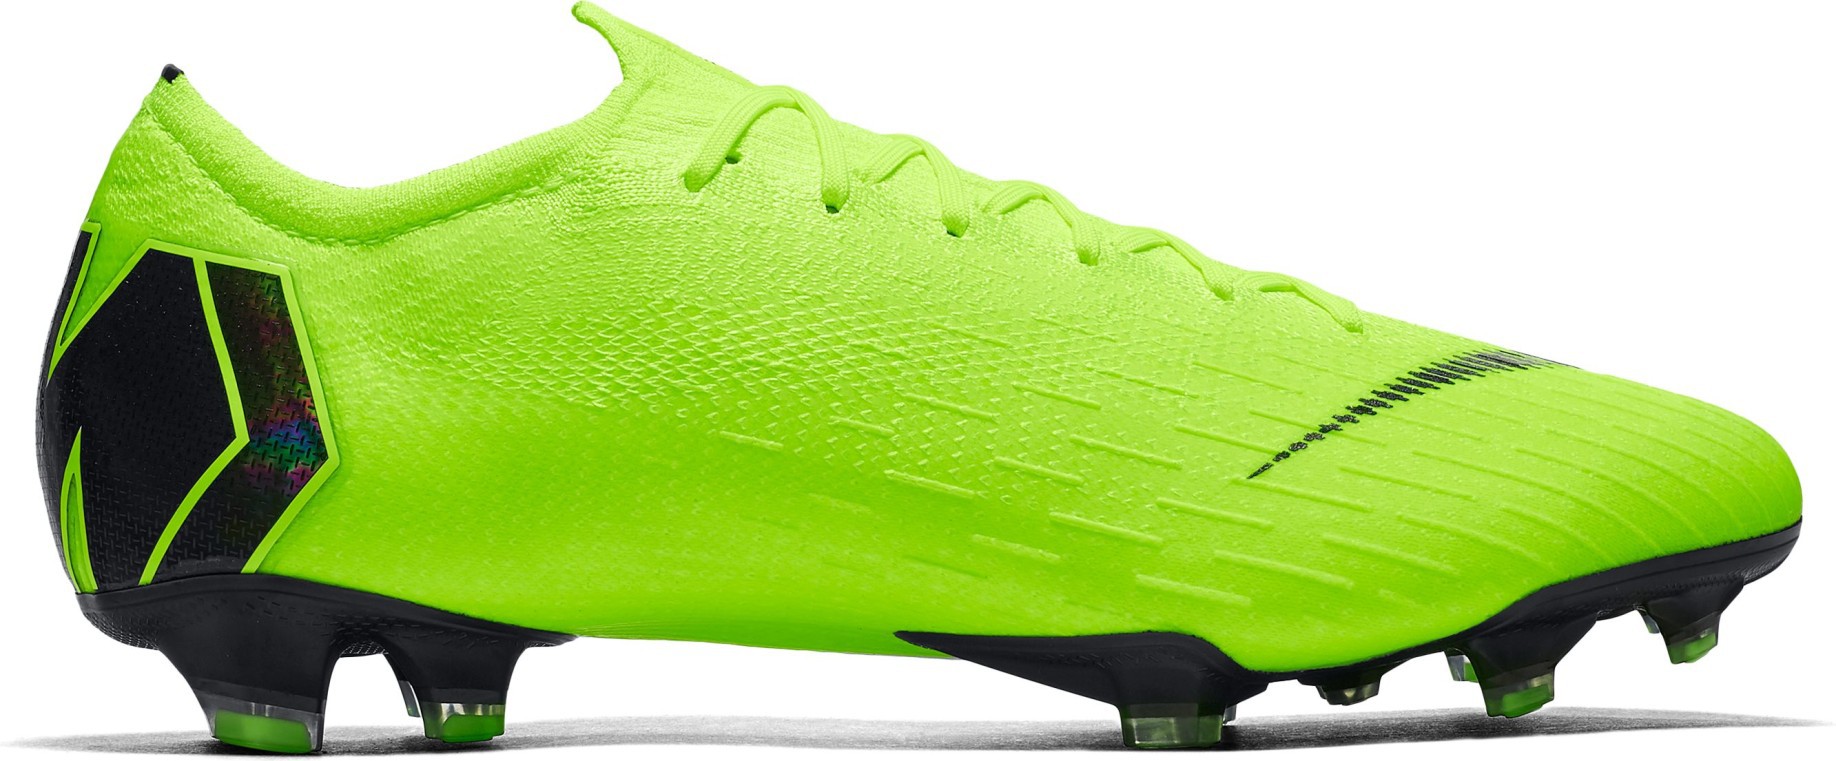 Las botas de fútbol Nike Mercurial Vapor XII Elite FG Siempre hacia Adelante colore amarillo - Nike - SportIT.com